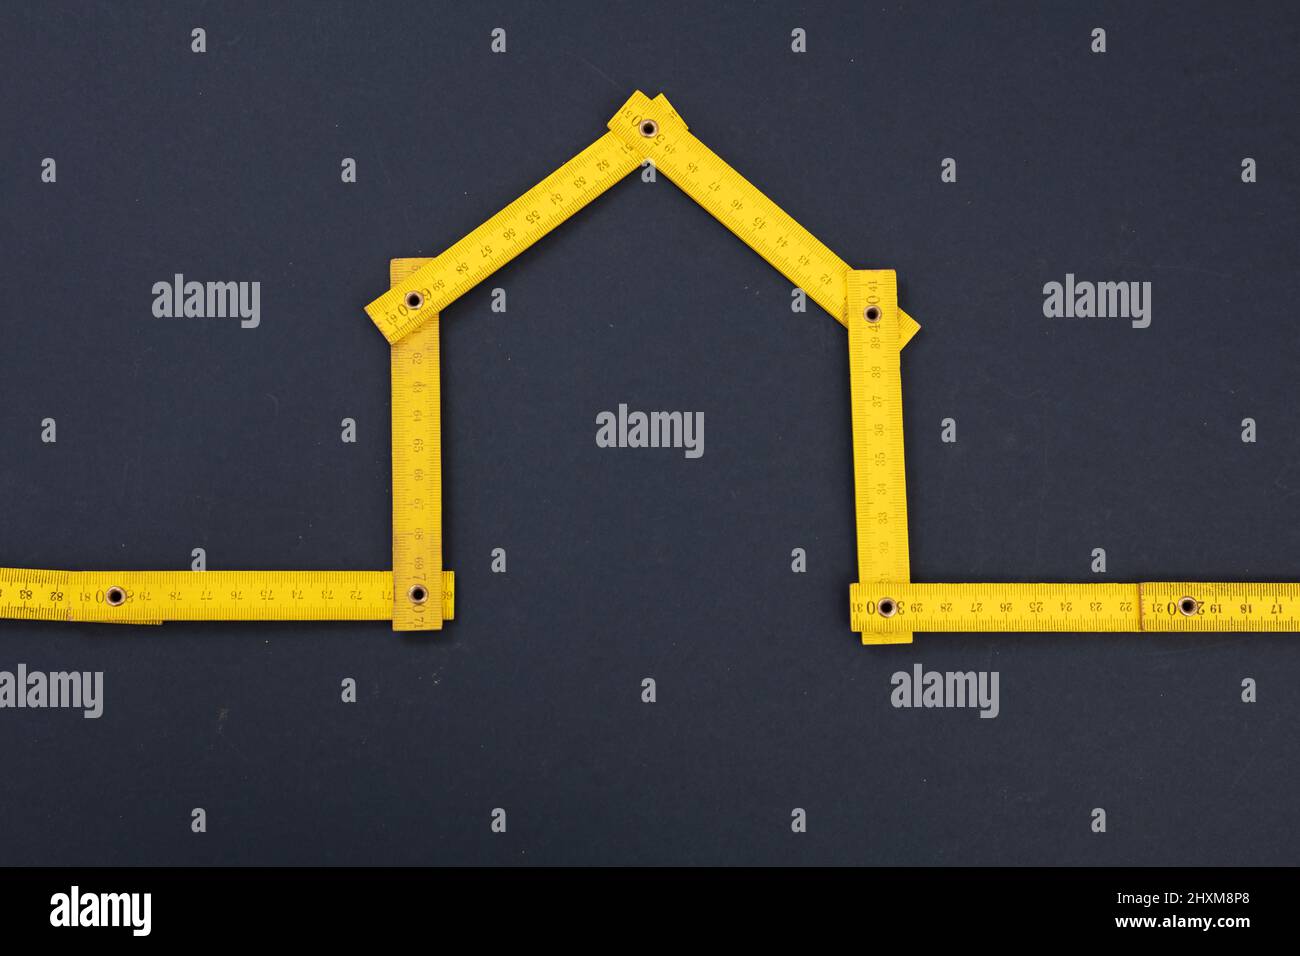 Réparation à domicile. Mesure en bois jaune de forme de maison, fond gris noir. Règle pliante, atelier, bricolage, concept de handyman. Banque D'Images